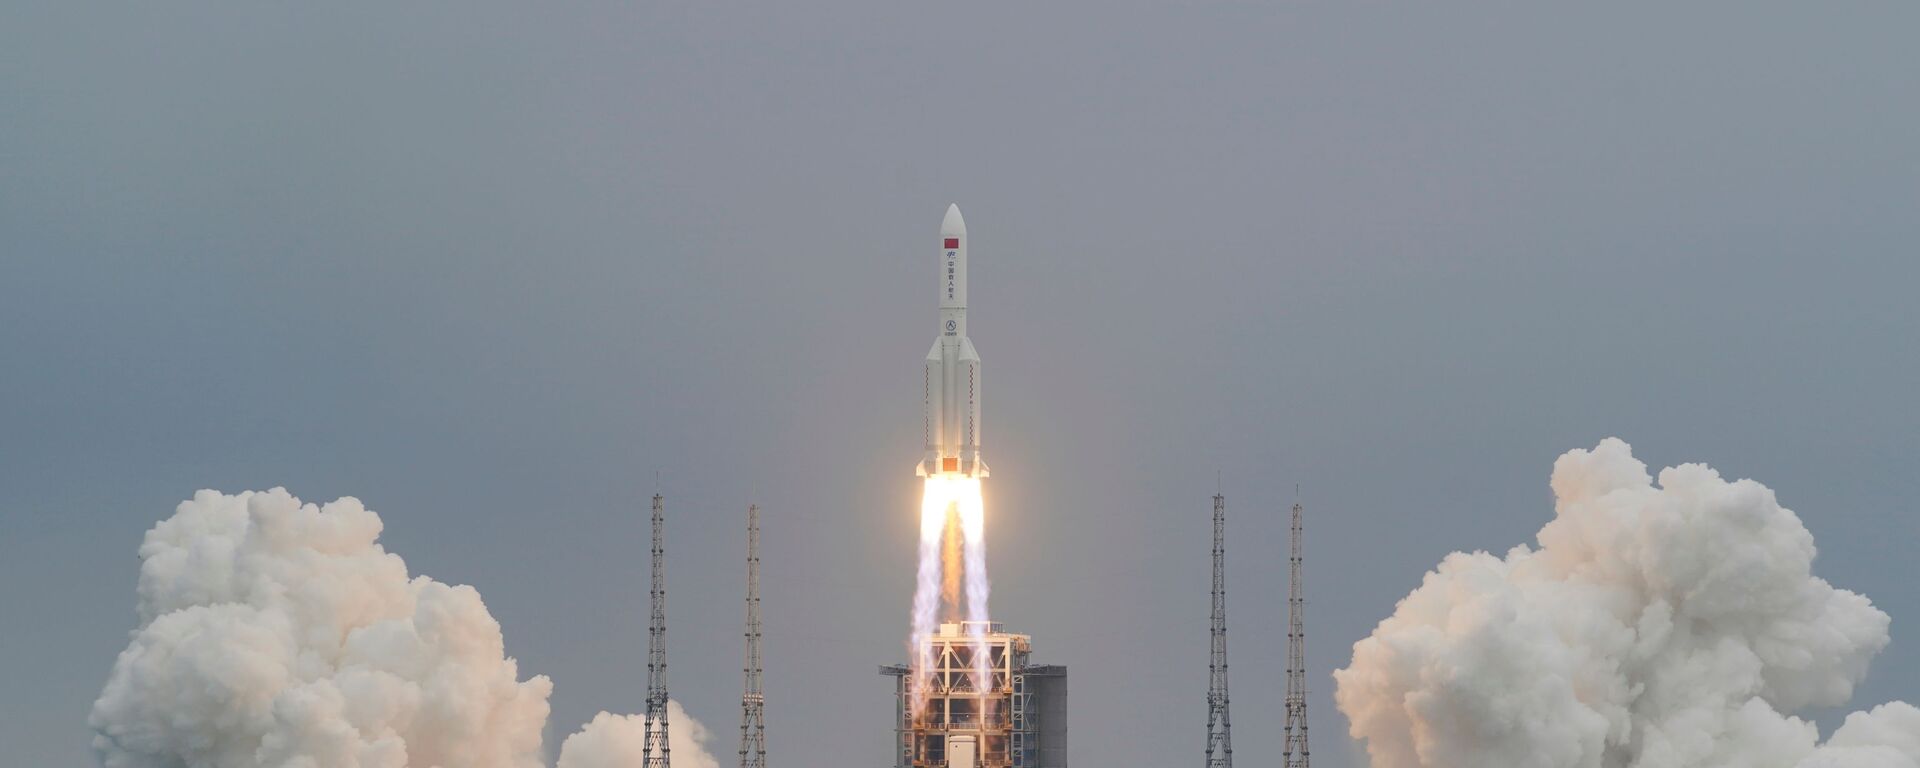 انطلاق صاروخ لونغ مارش - 5 بي واي 2، الذي يحمل الوحدة الأساسية لمحطة الفضاء الصينية تيانخه، من وينتشانغ، 29 نيسان/ أبريل 2021 - سبوتنيك عربي, 1920, 14.06.2021